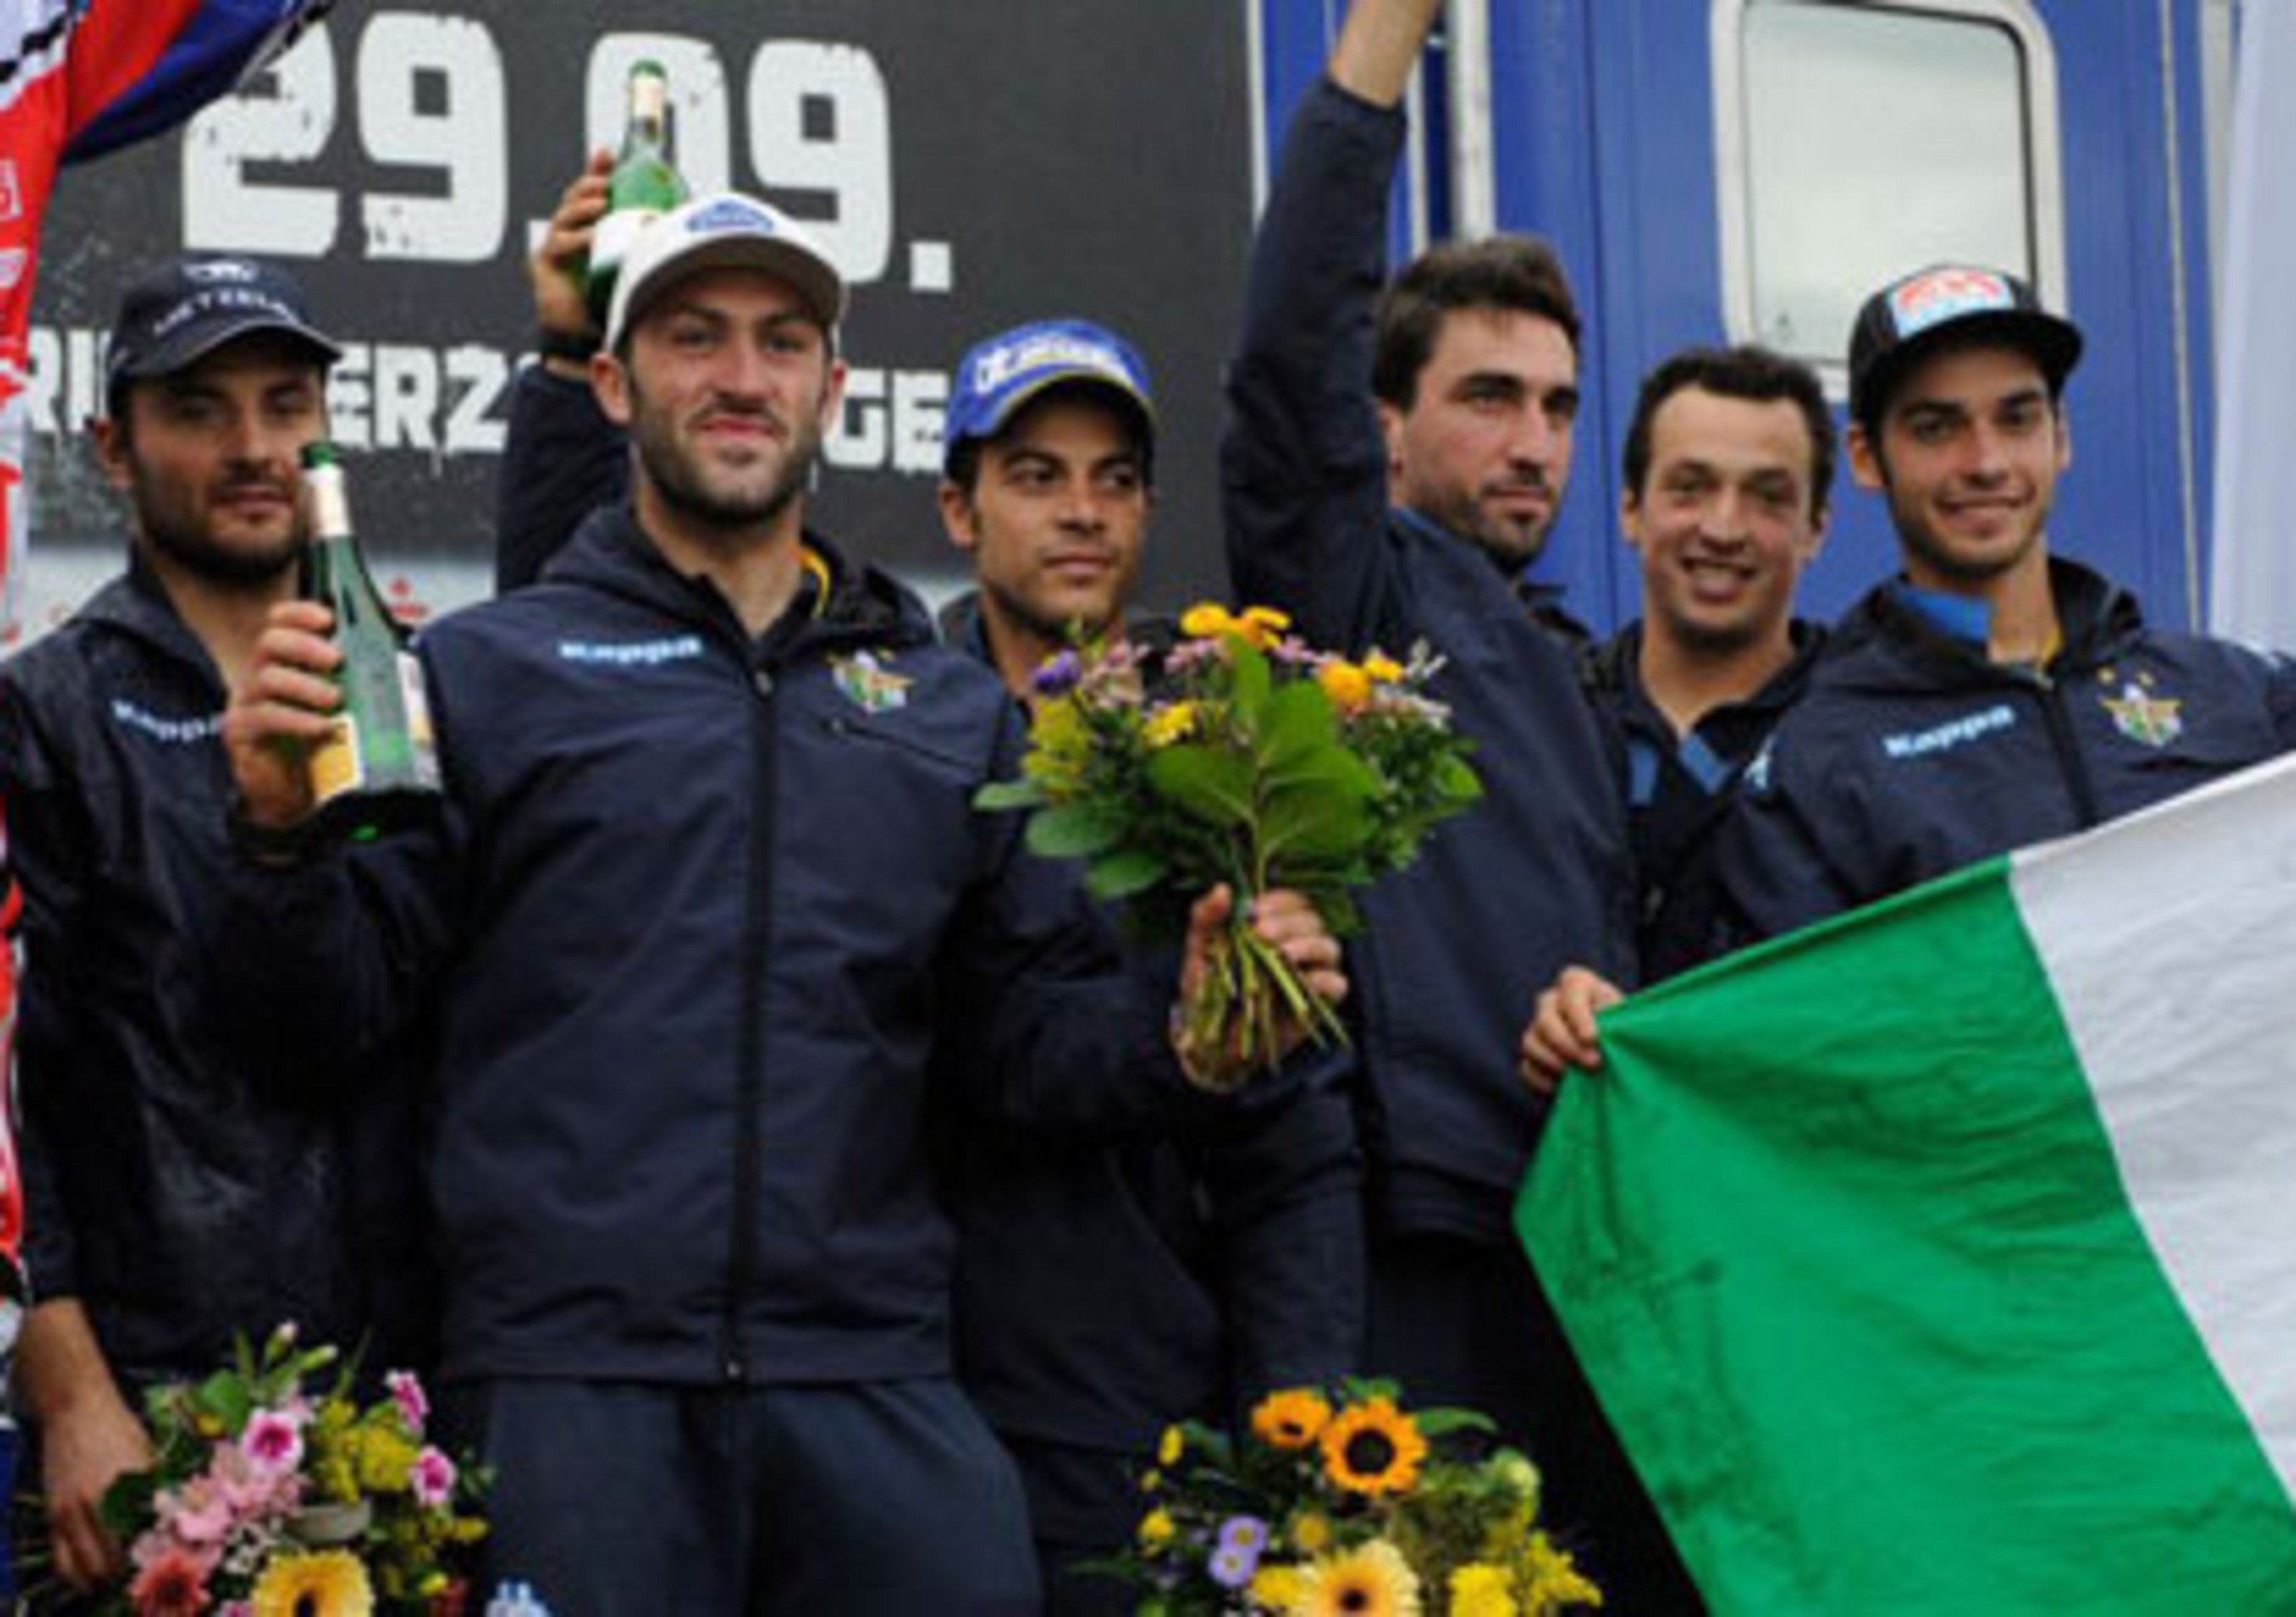 Sei Giorni 2012 - Gli Azzurri conquistano il bronzo